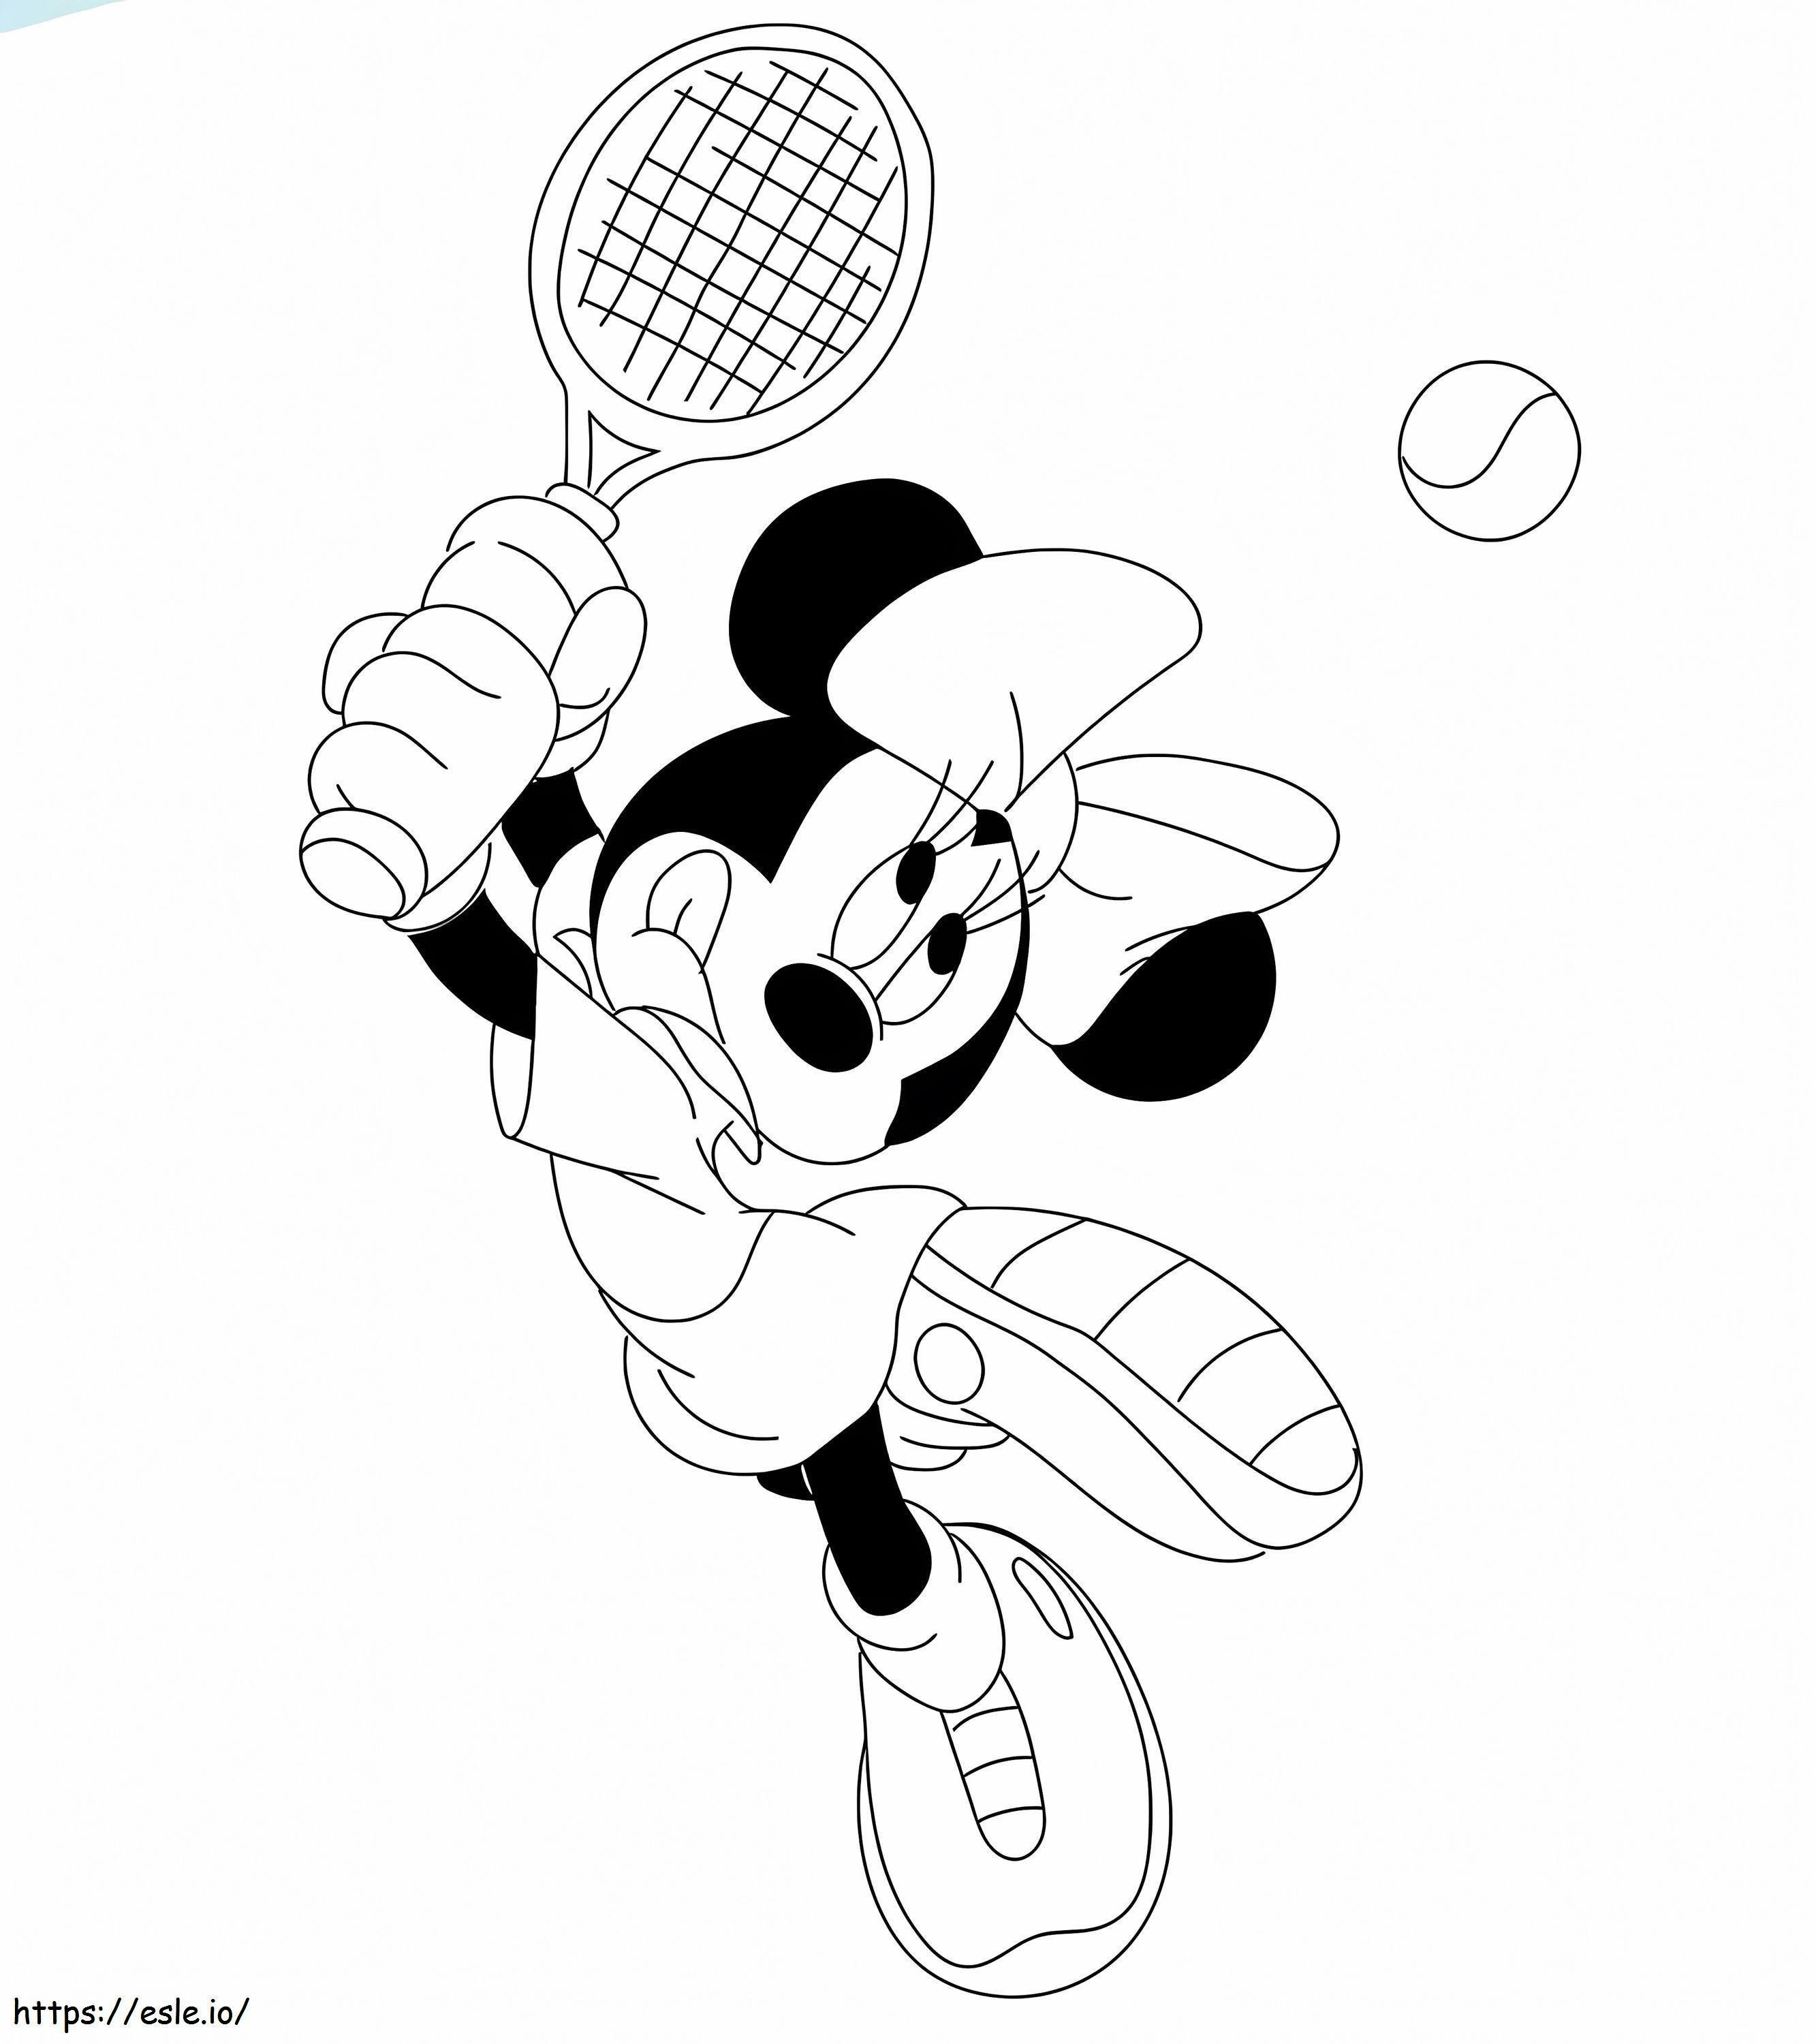 Minnie Mouse jugando al tenis para colorear